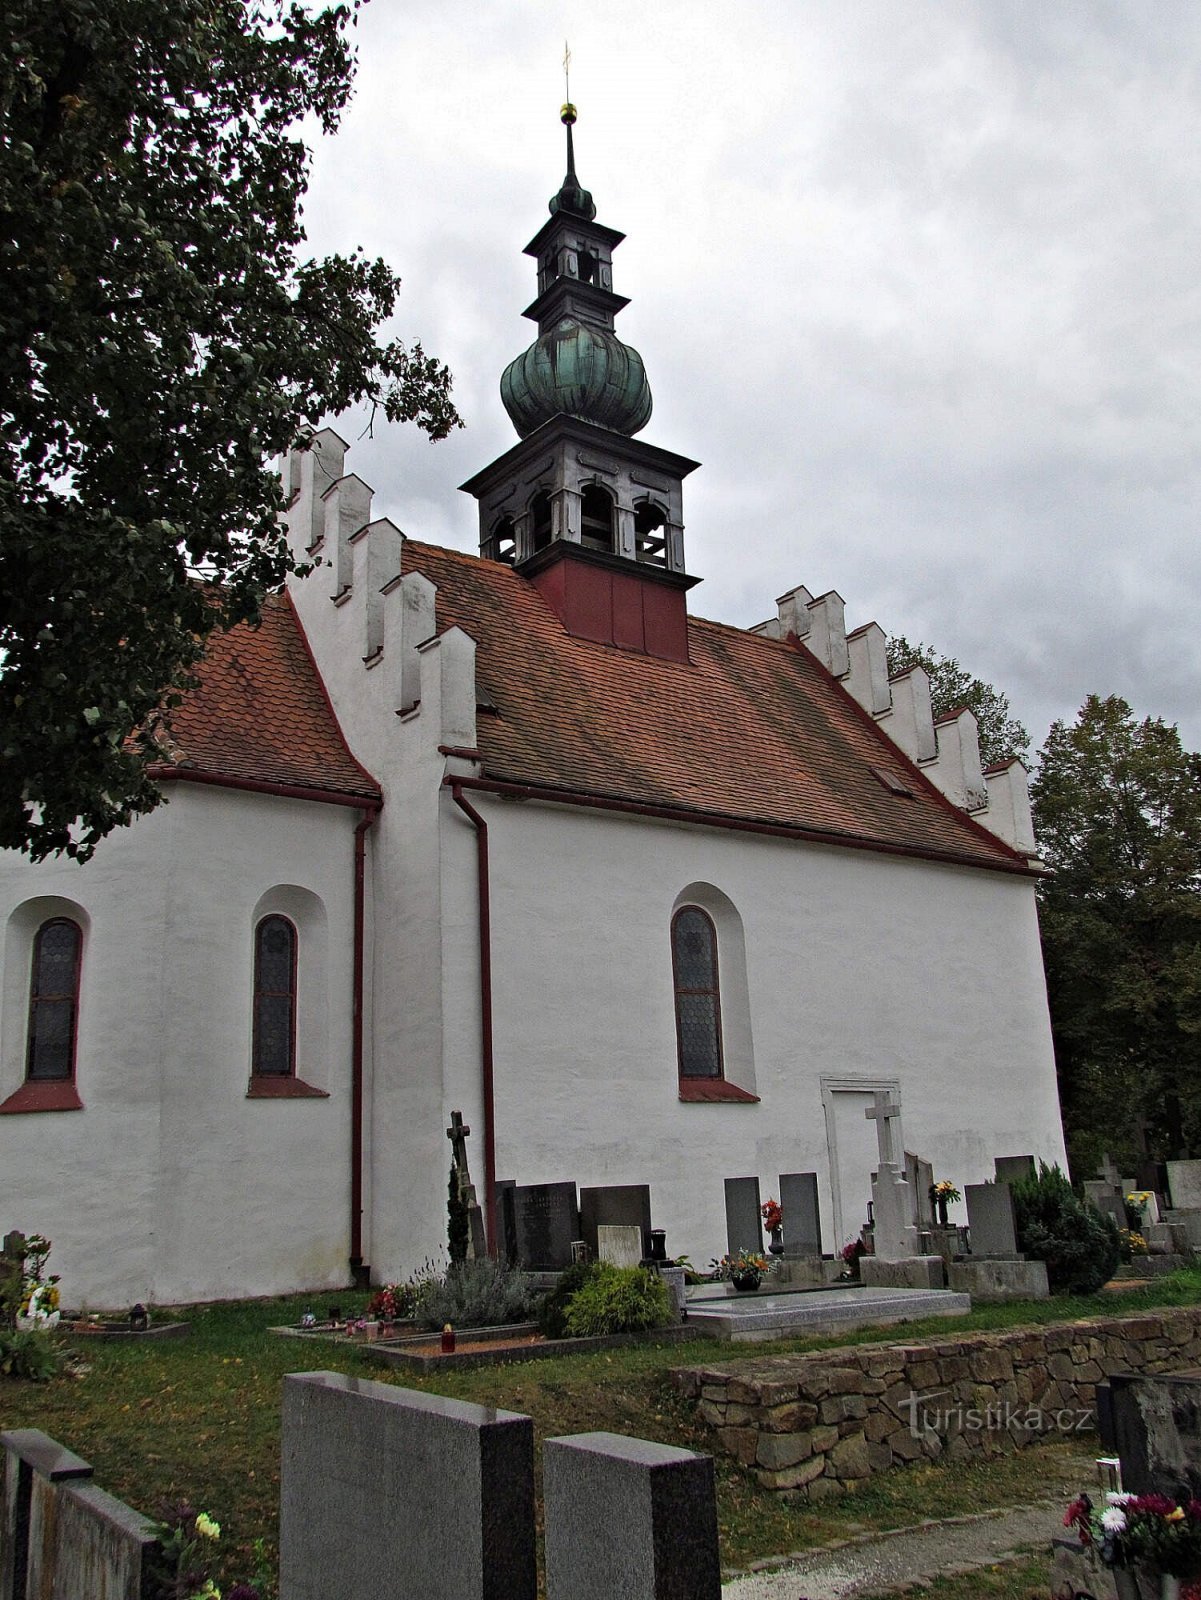 Vorkloster - Friedhofskirche der Heiligen Dreifaltigkeit